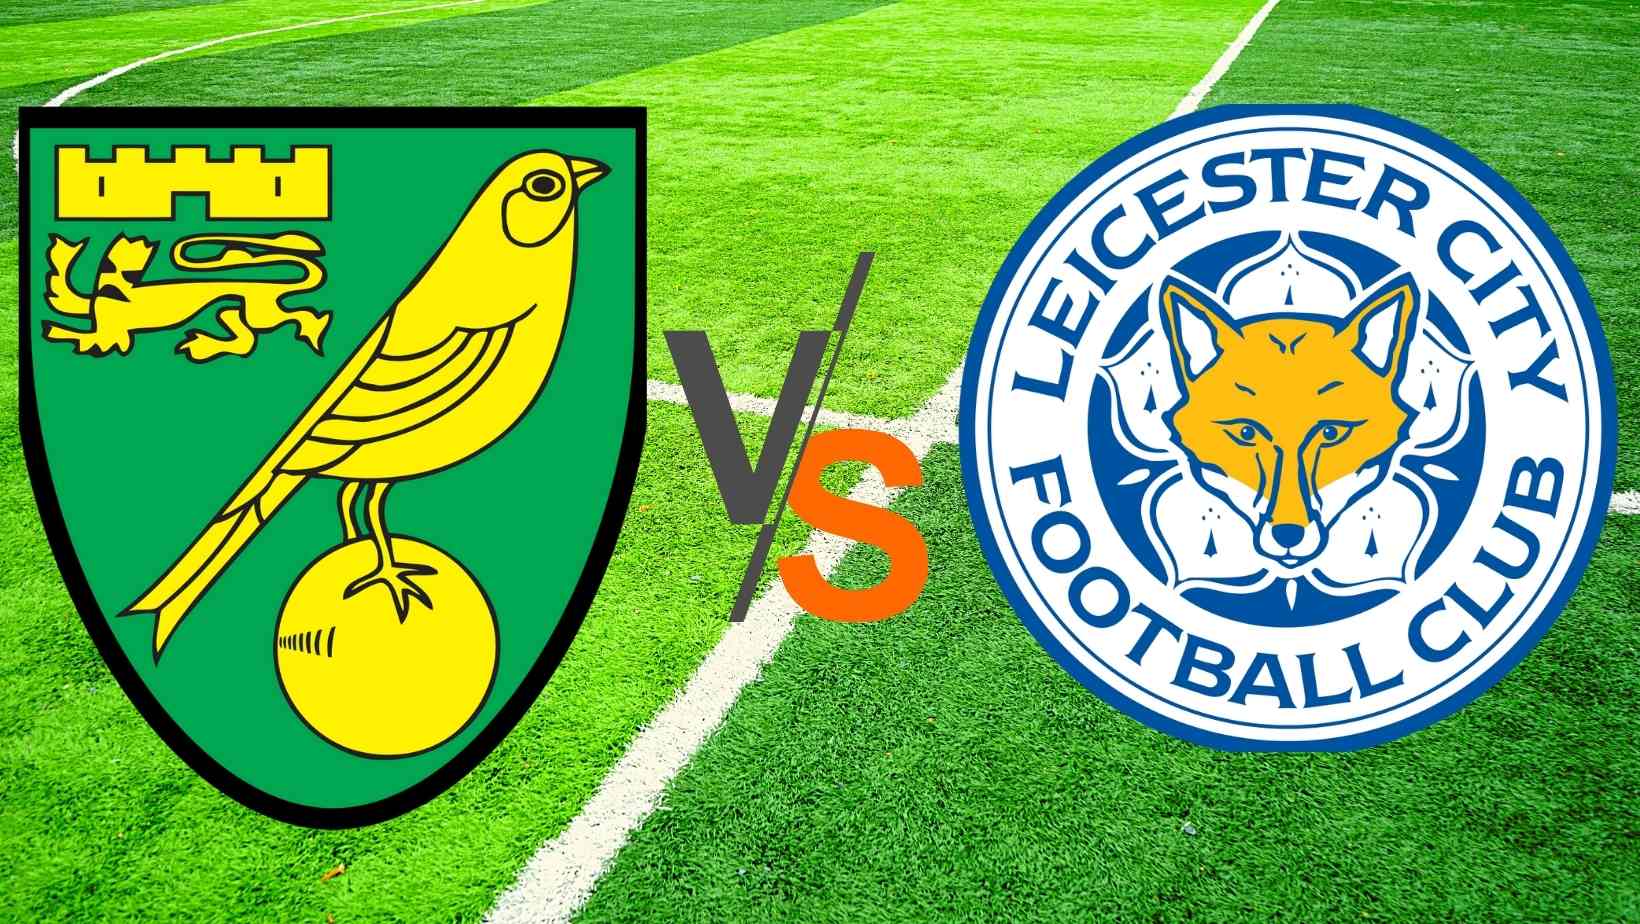 Norwich City vs Leicester City Dream 11 Prediction